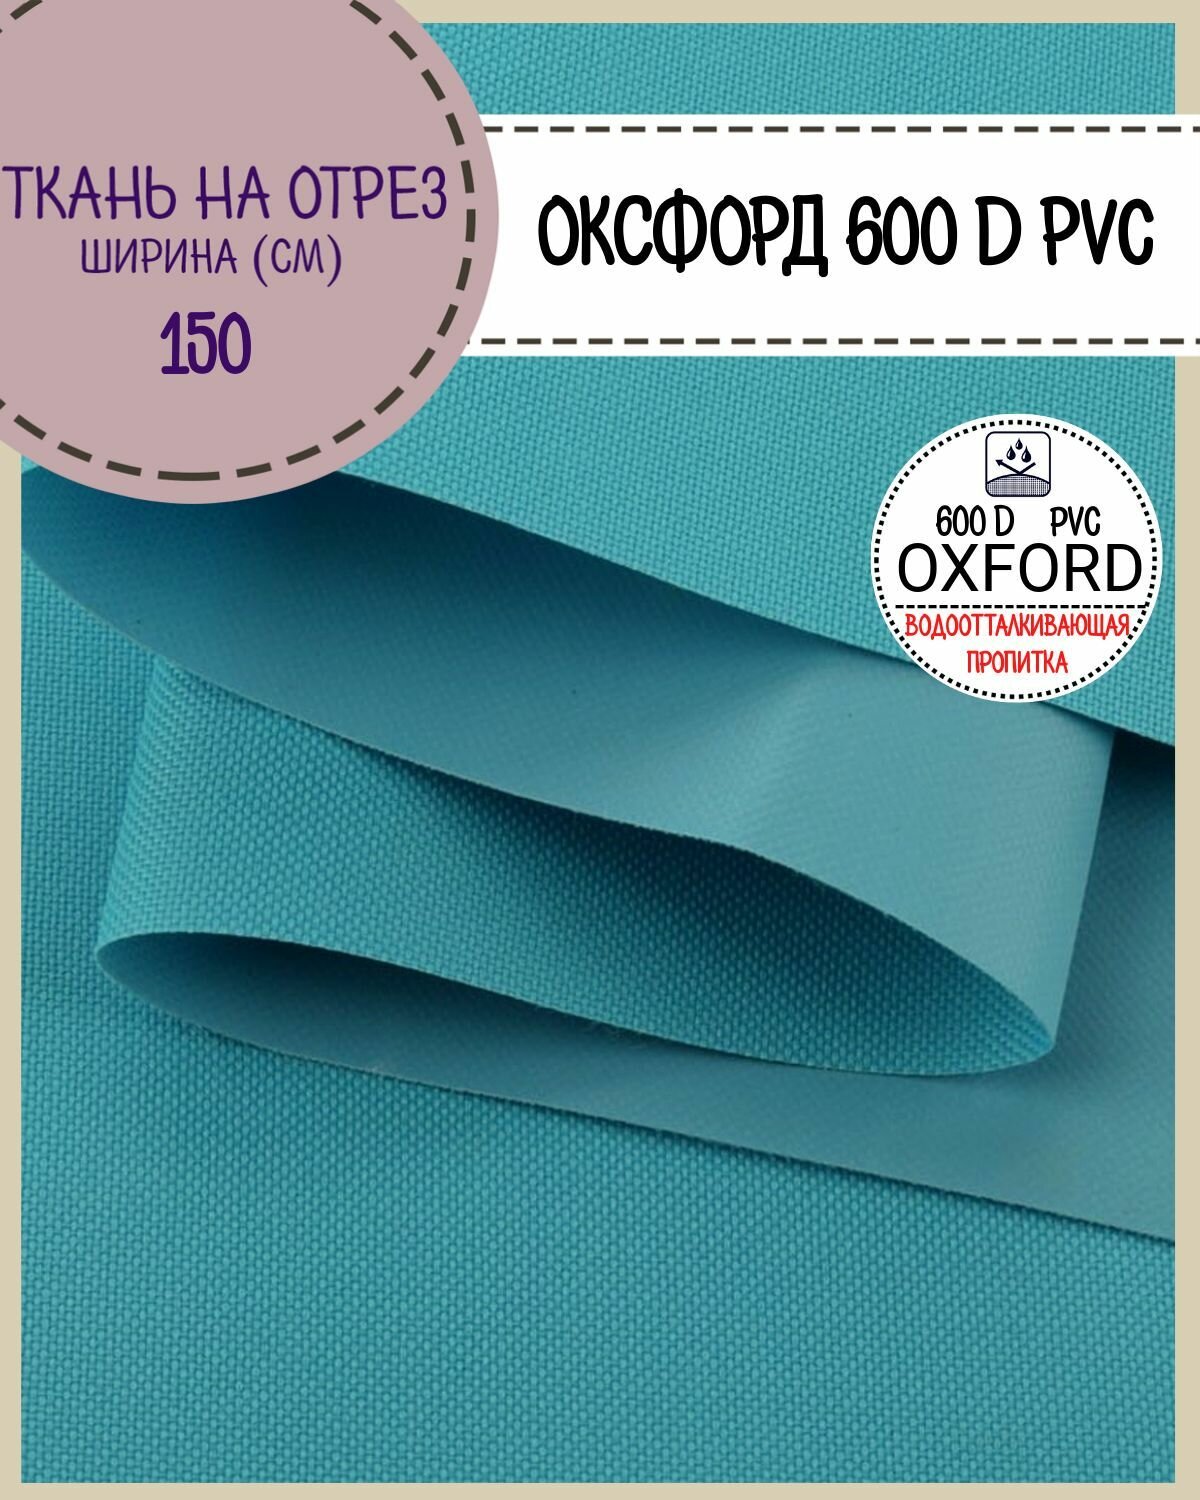 Ткань Оксфорд Oxford 600D PVC (ПВХ), водоотталкивающая, цв. бирюзовый, на отрез, цена за пог. метр